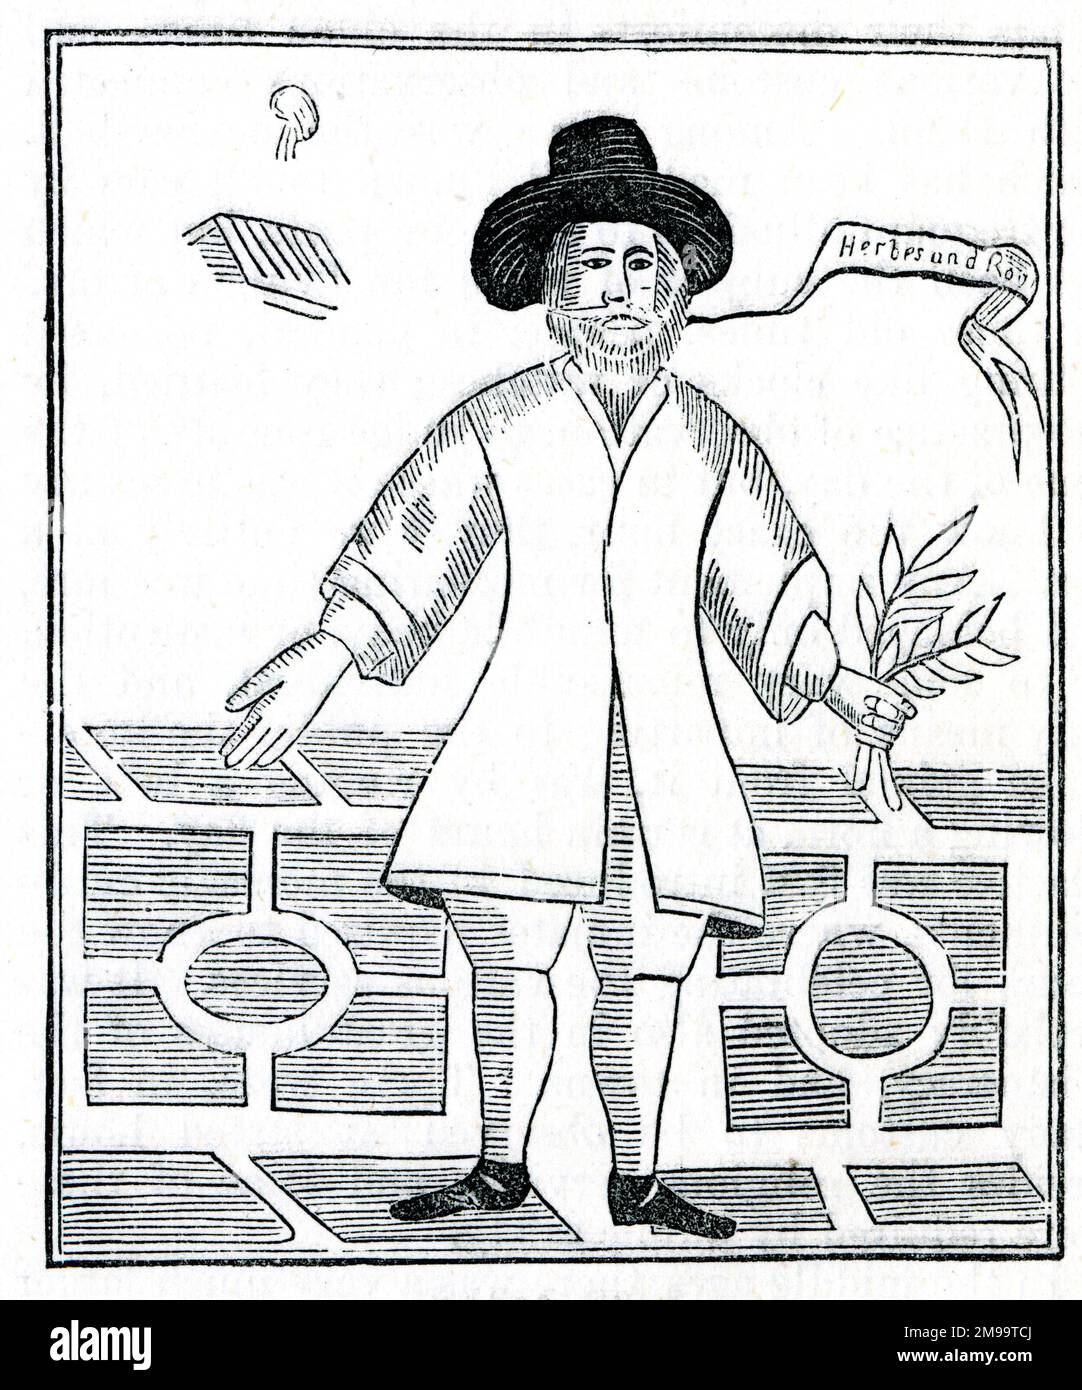 Roger Crab (1621-1680), soldat anglais, haberdasher, phytologue, écrivain et végétarien. Banque D'Images